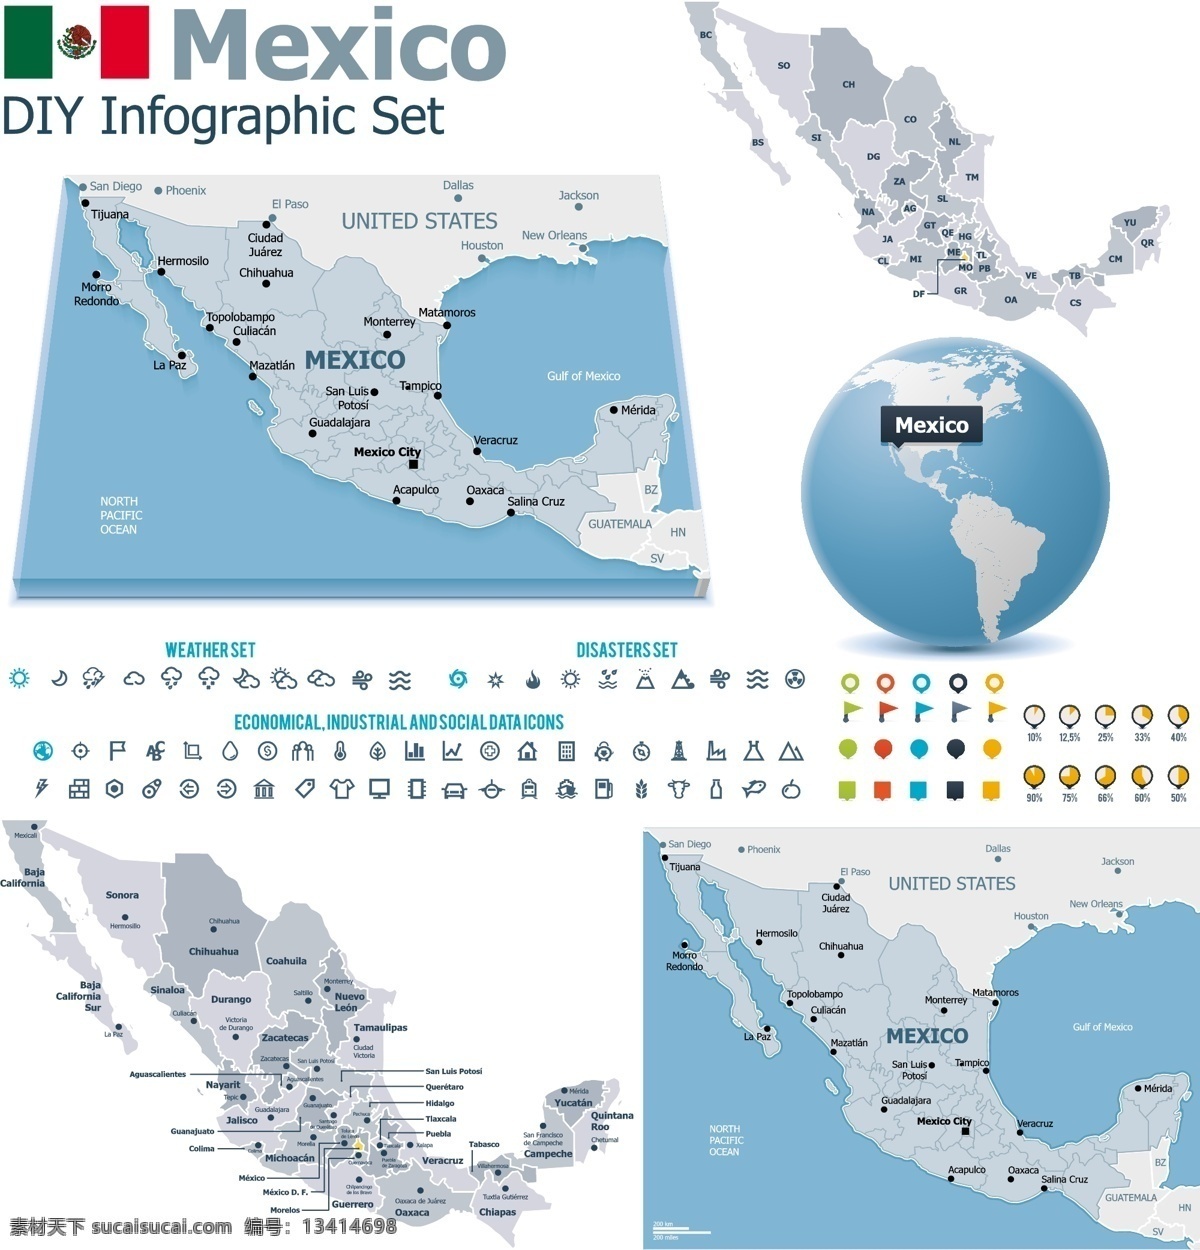 墨西哥地图 地图 地球 墨西哥 墨西哥国旗 矢量图案 边框底纹 背景图案 生活百科 矢量素材 白色